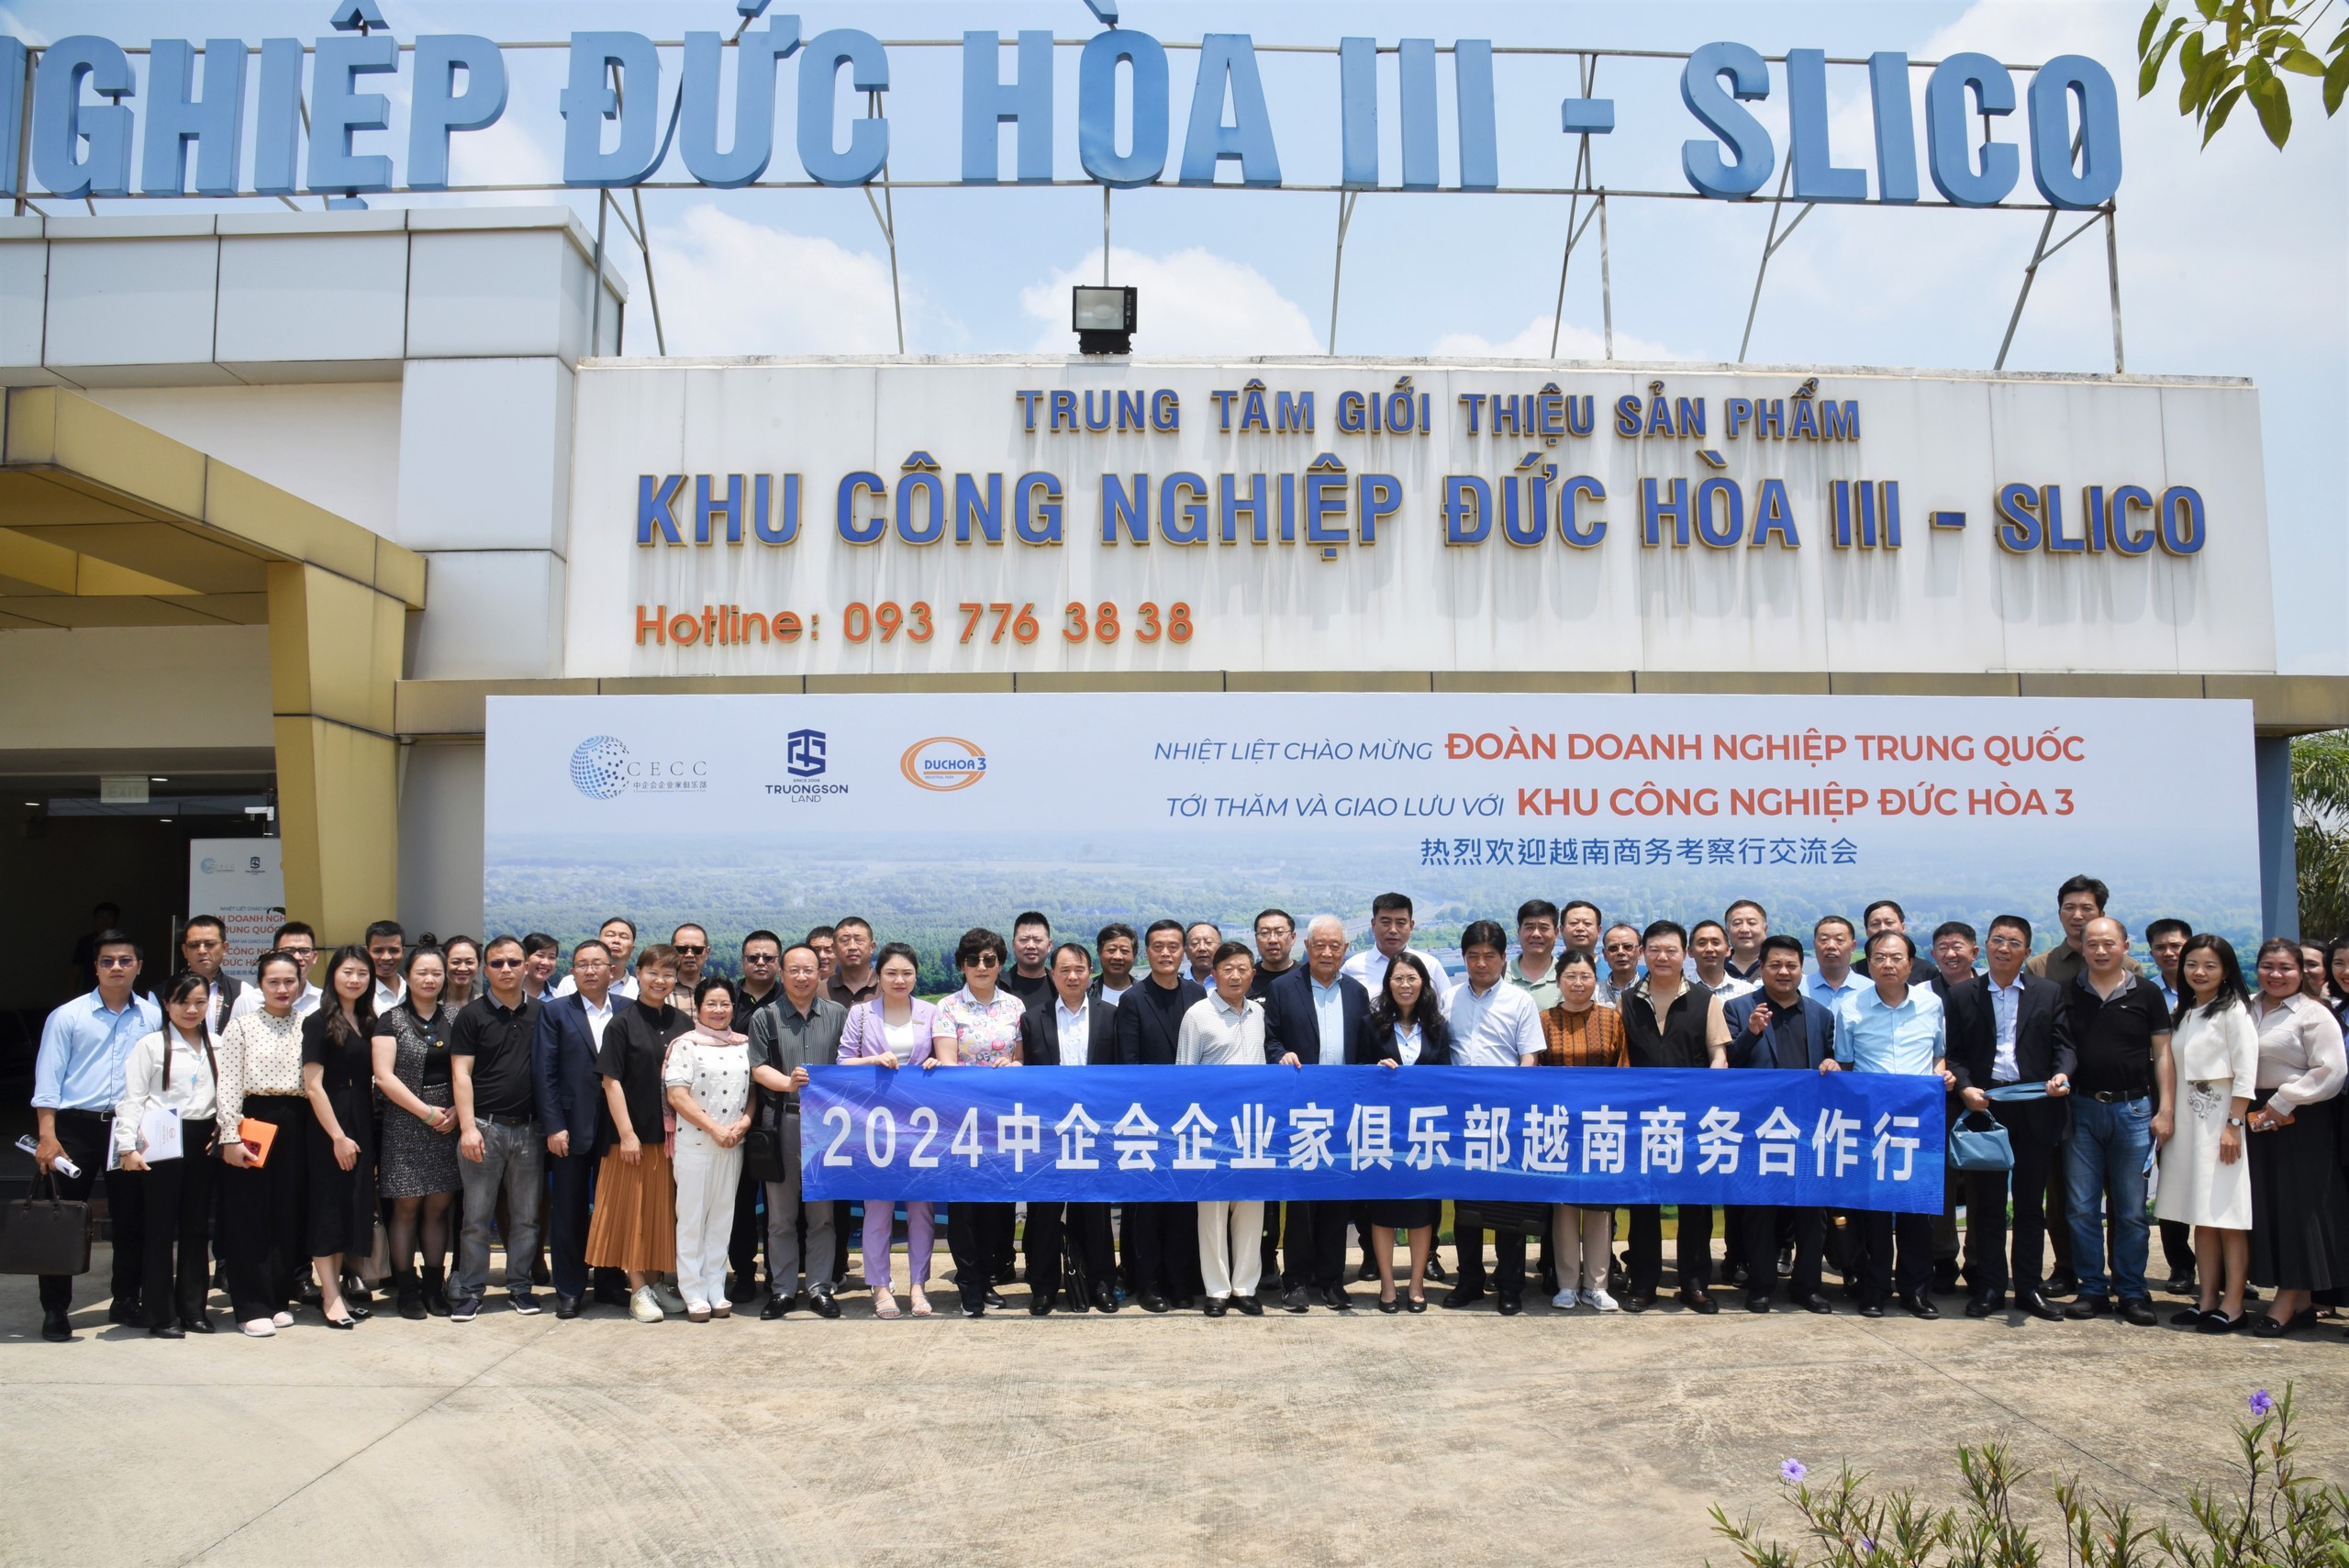 Trường Sơn Land đón đoàn doanh nghiệp Trung Quốc đến thăm Khu công nghiệp Đức Hòa 3 - Ảnh 2.